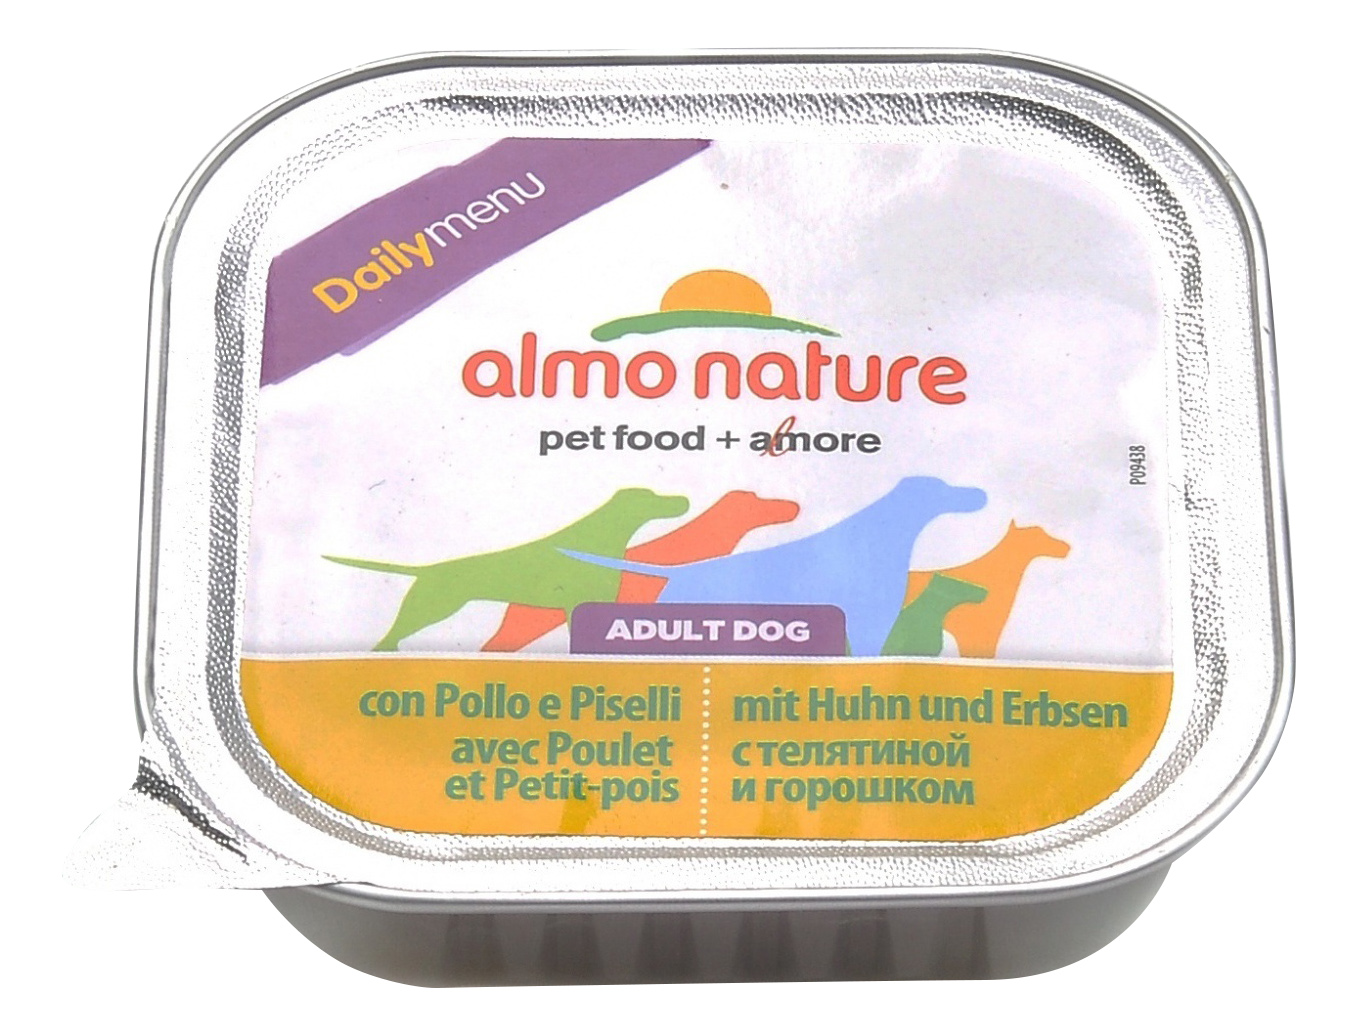 фото Консервы для собак almo nature daily menu, горошек, курица, 300г